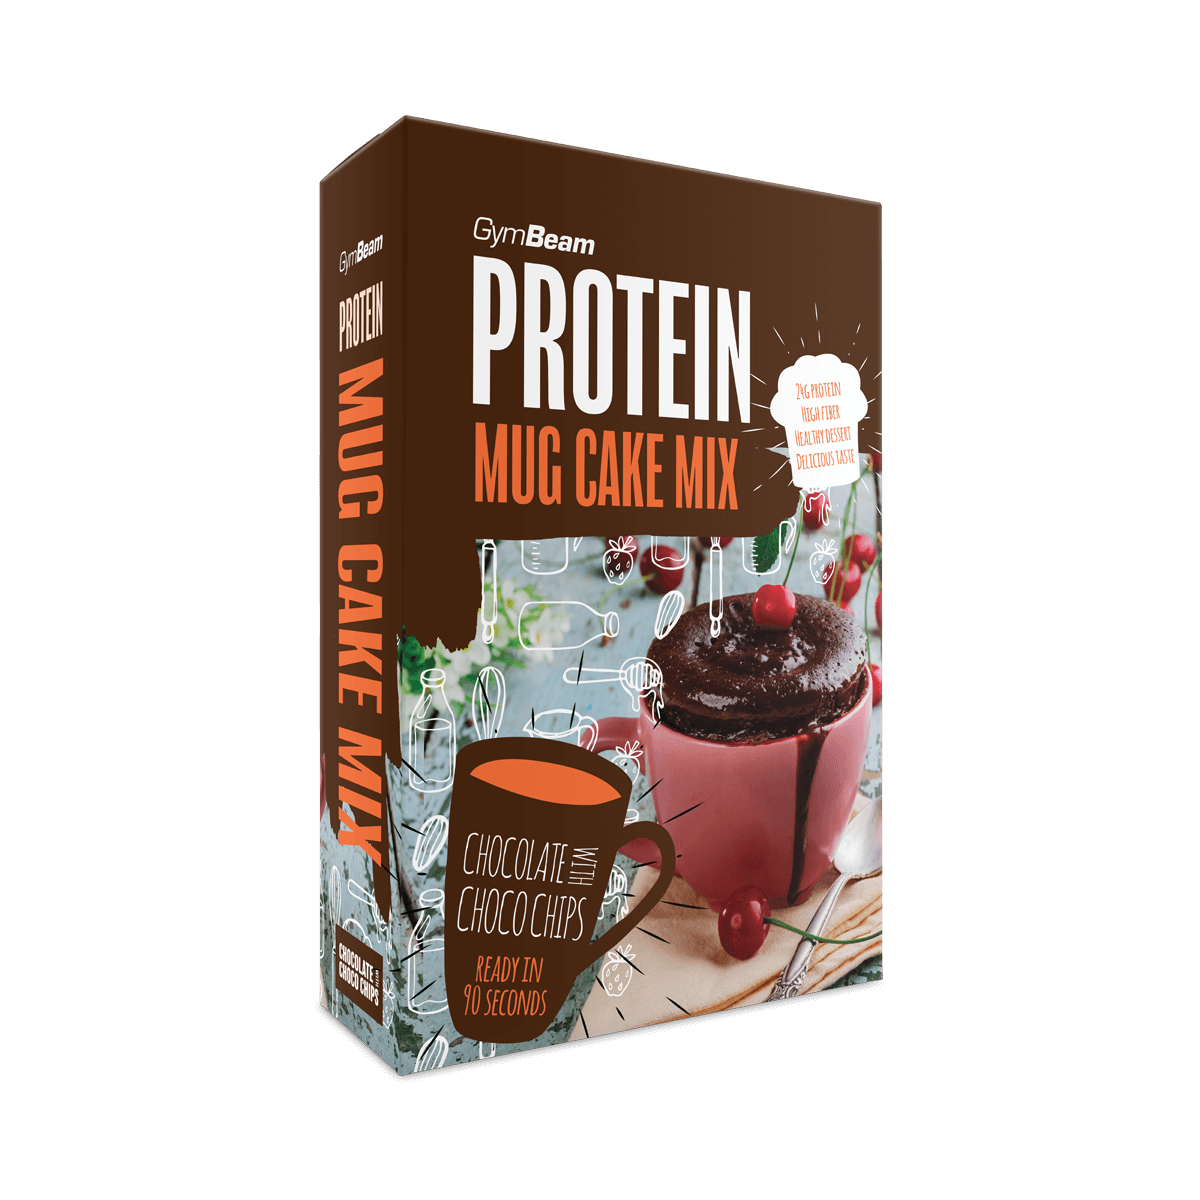 GymBeam Protein Mug Cake Mix chocolate with choco chips 500 g